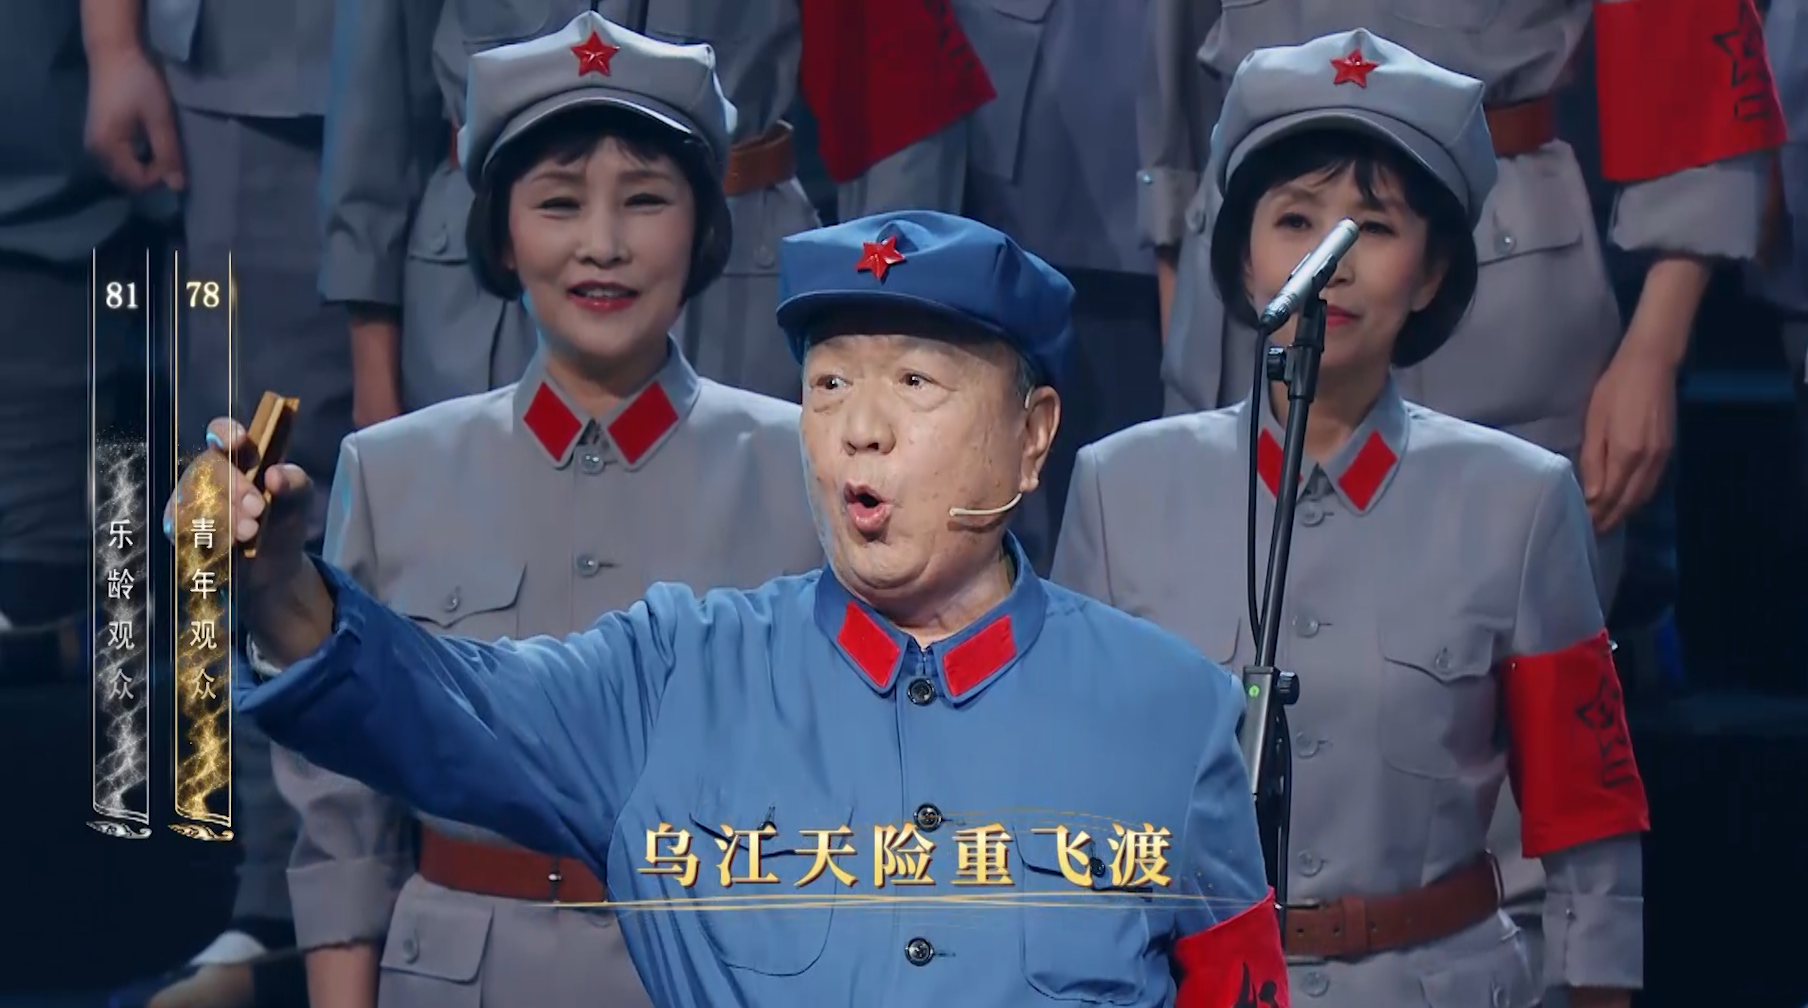 张惠林老师在《乐龄唱响》舞台的最后一次演出